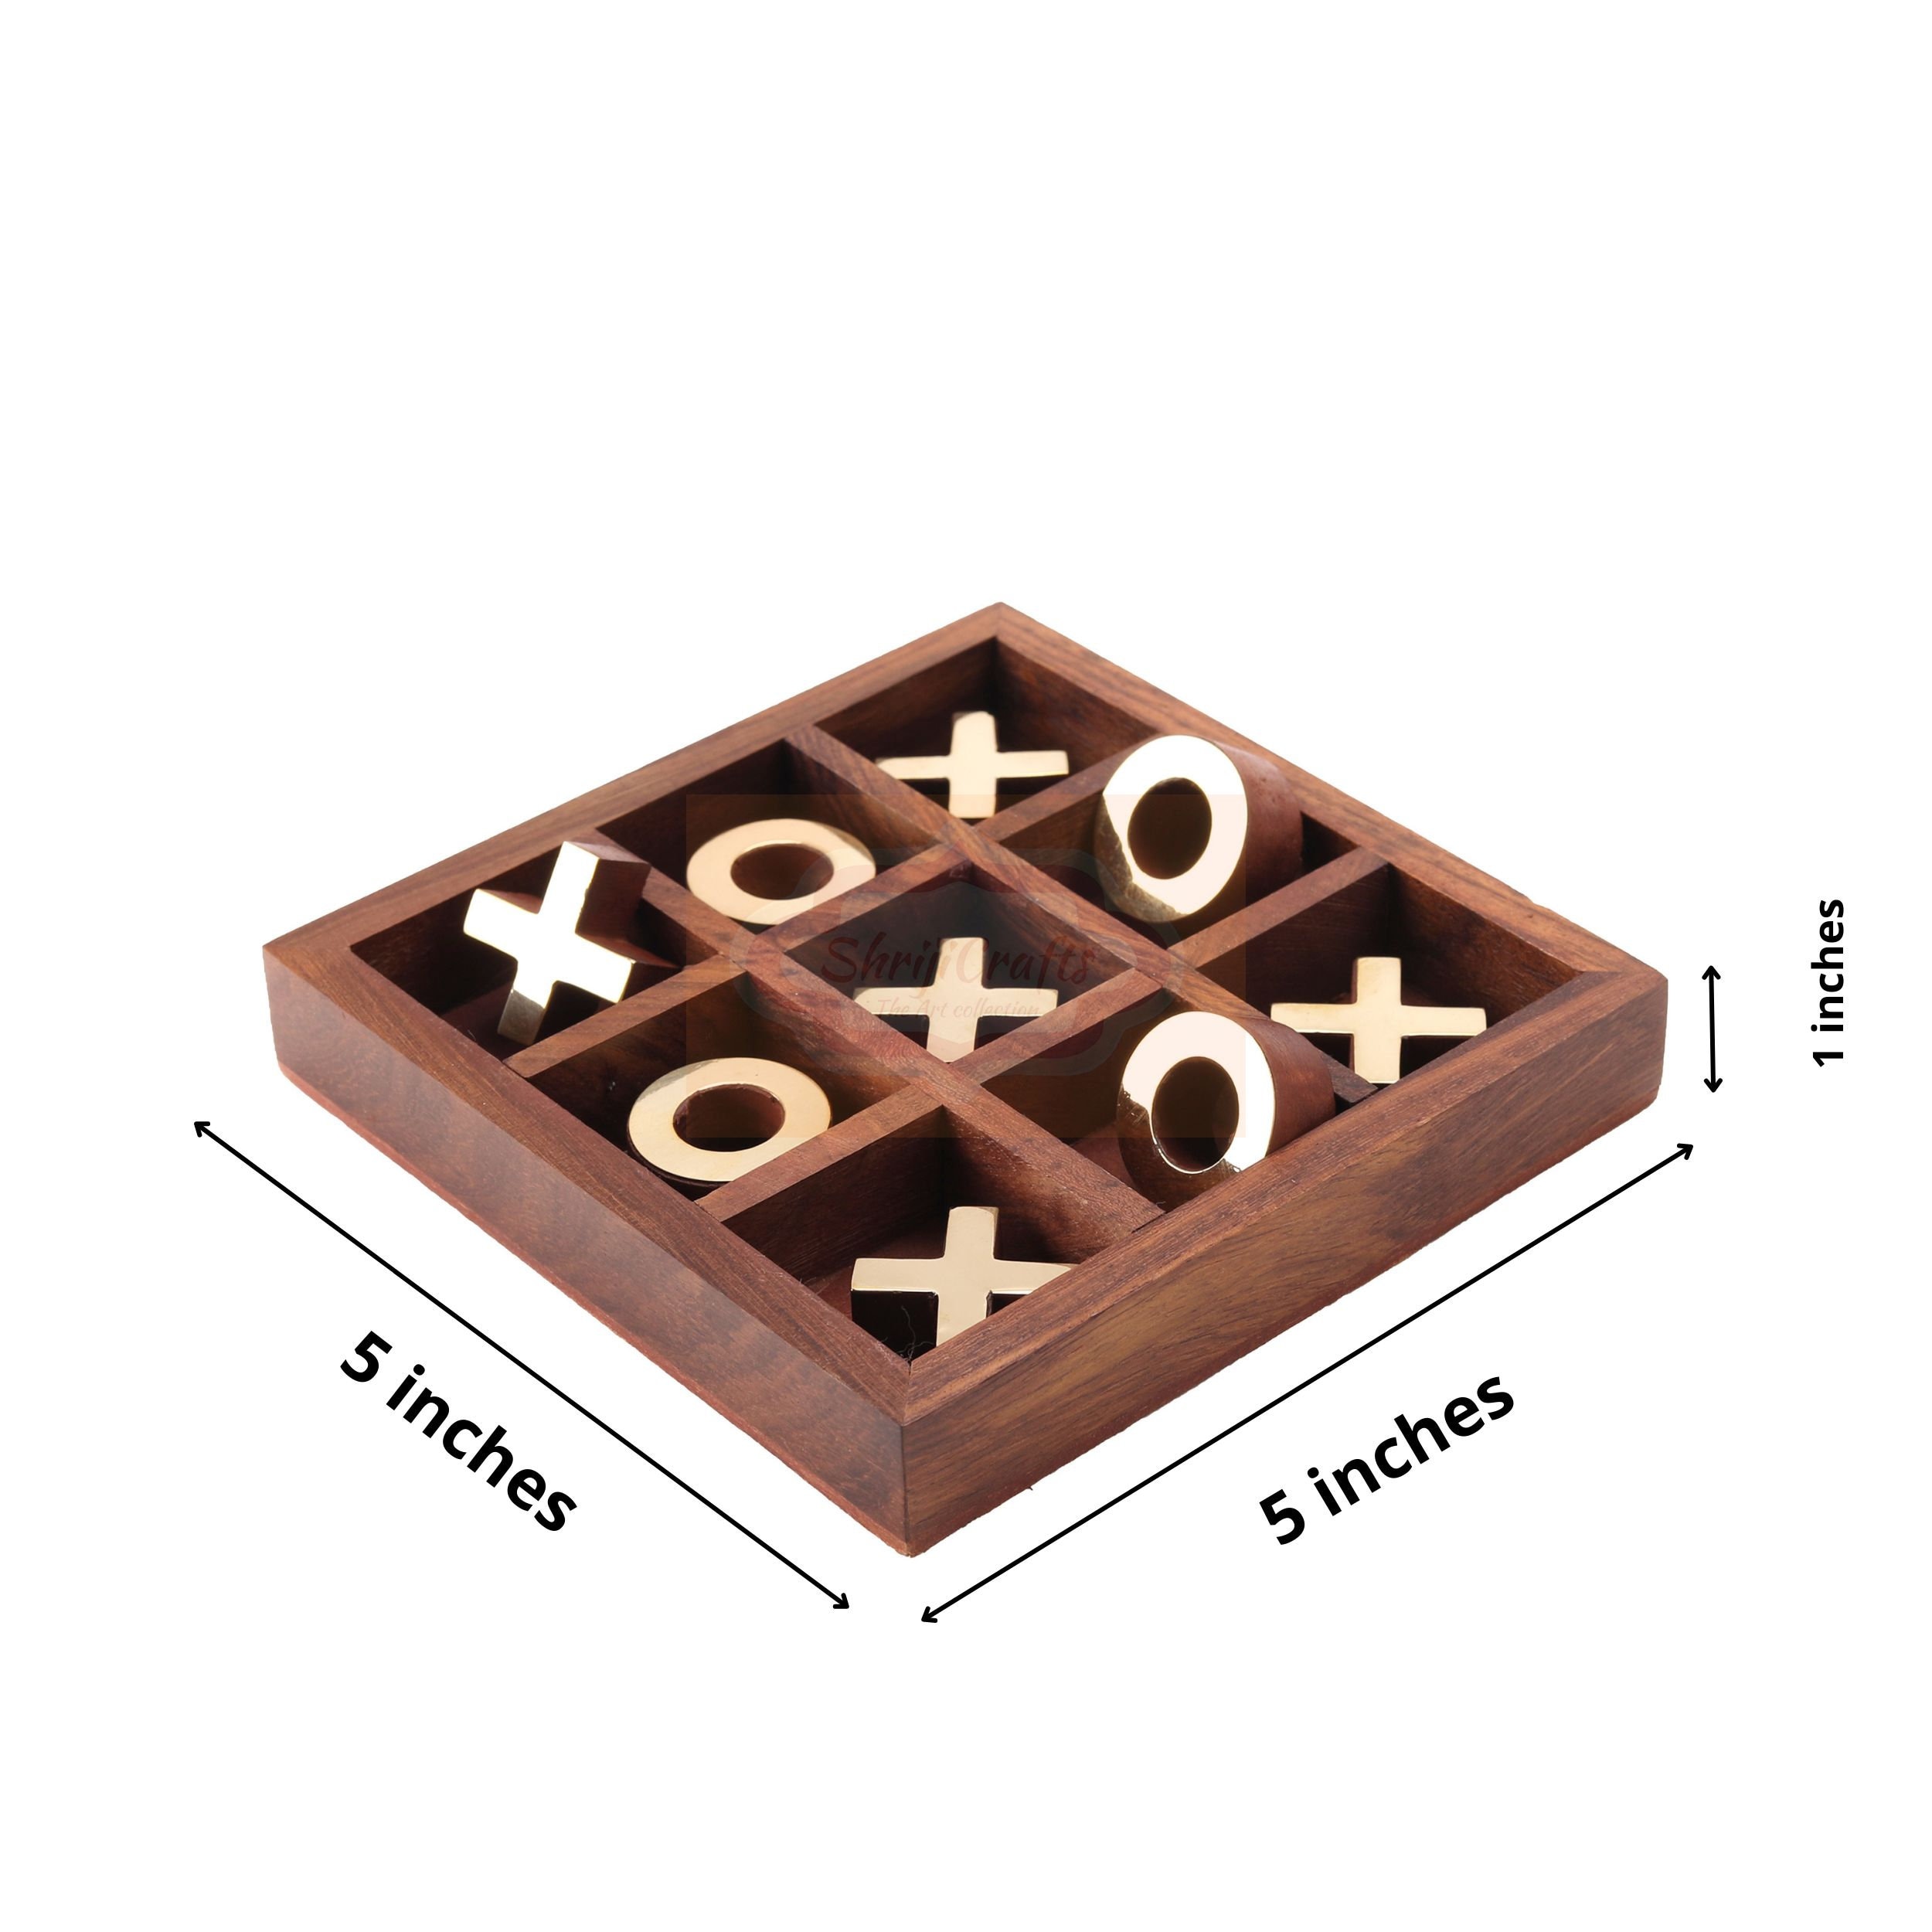  NUTTA - TIC TAC Toe Wooden Games Classic Board Game